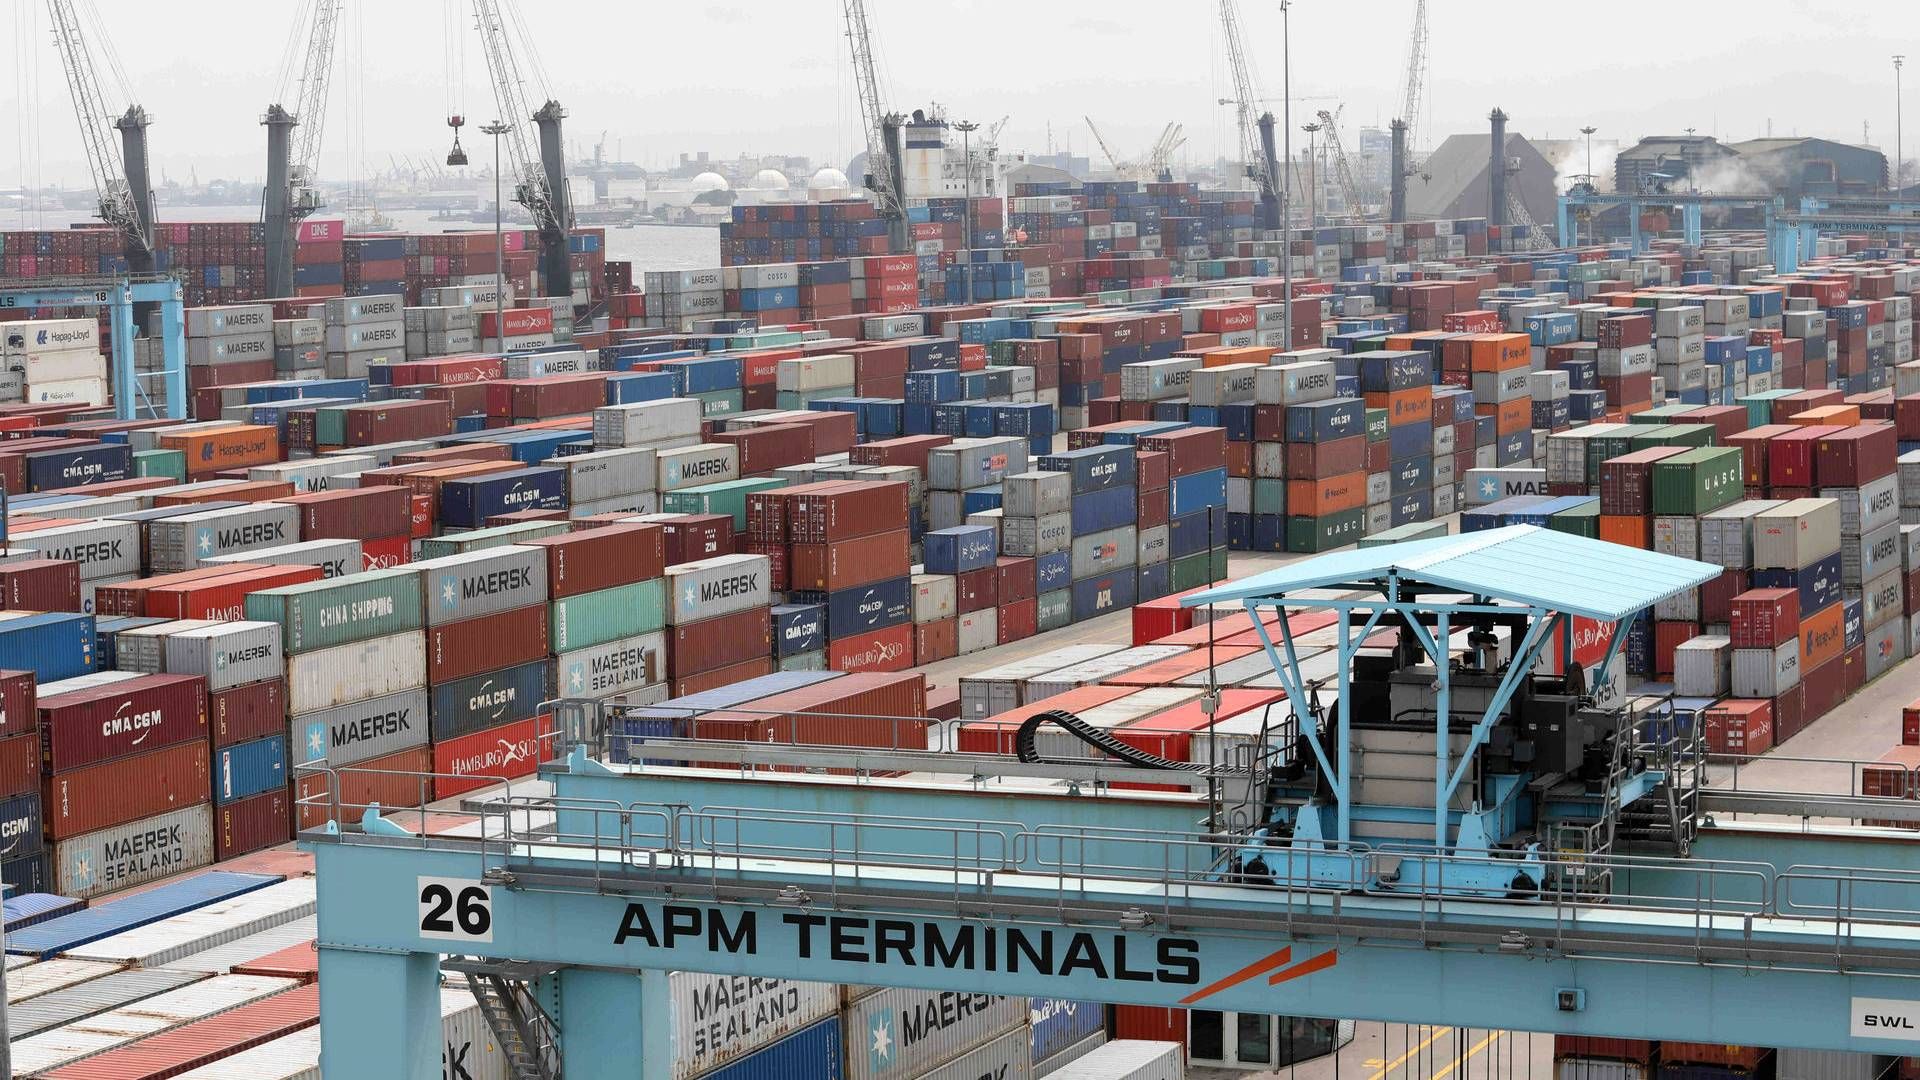 Det er over 7 mia. kr., som APM terminals har tænkt sig at investere, lyder det. | Foto: Temilade Adelaja/Reuters/Ritzau Scanpix